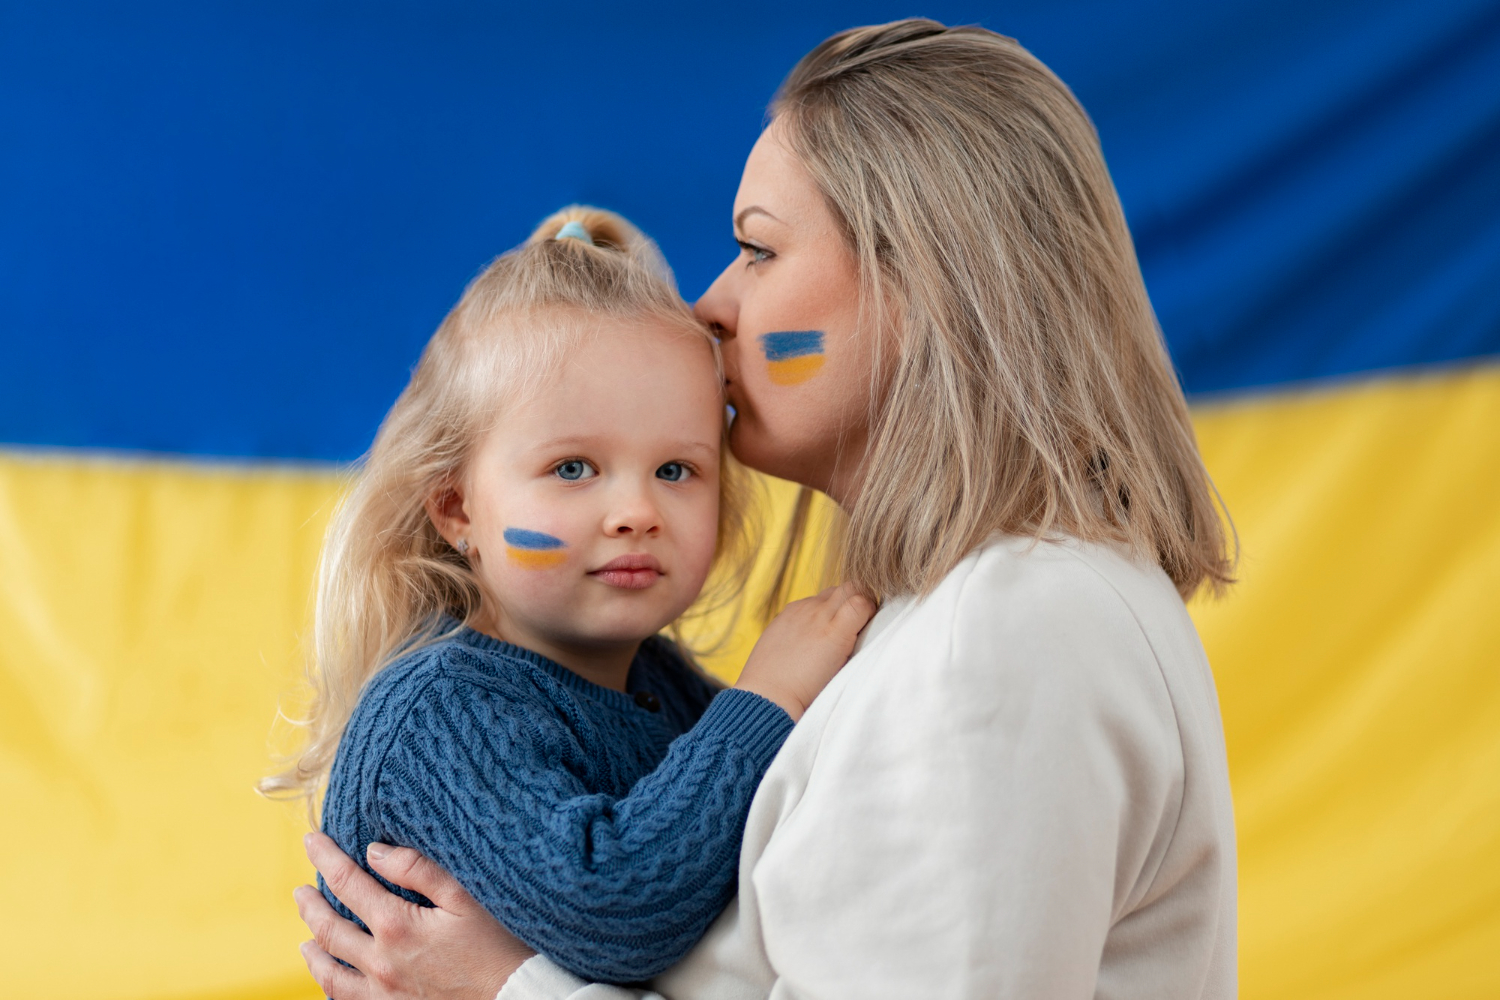 UNICEF przeznacza 100 tys. zł dla białostockich organizacji pozarządowych na integrację mieszkańców z uchodźcami z Ukrainy